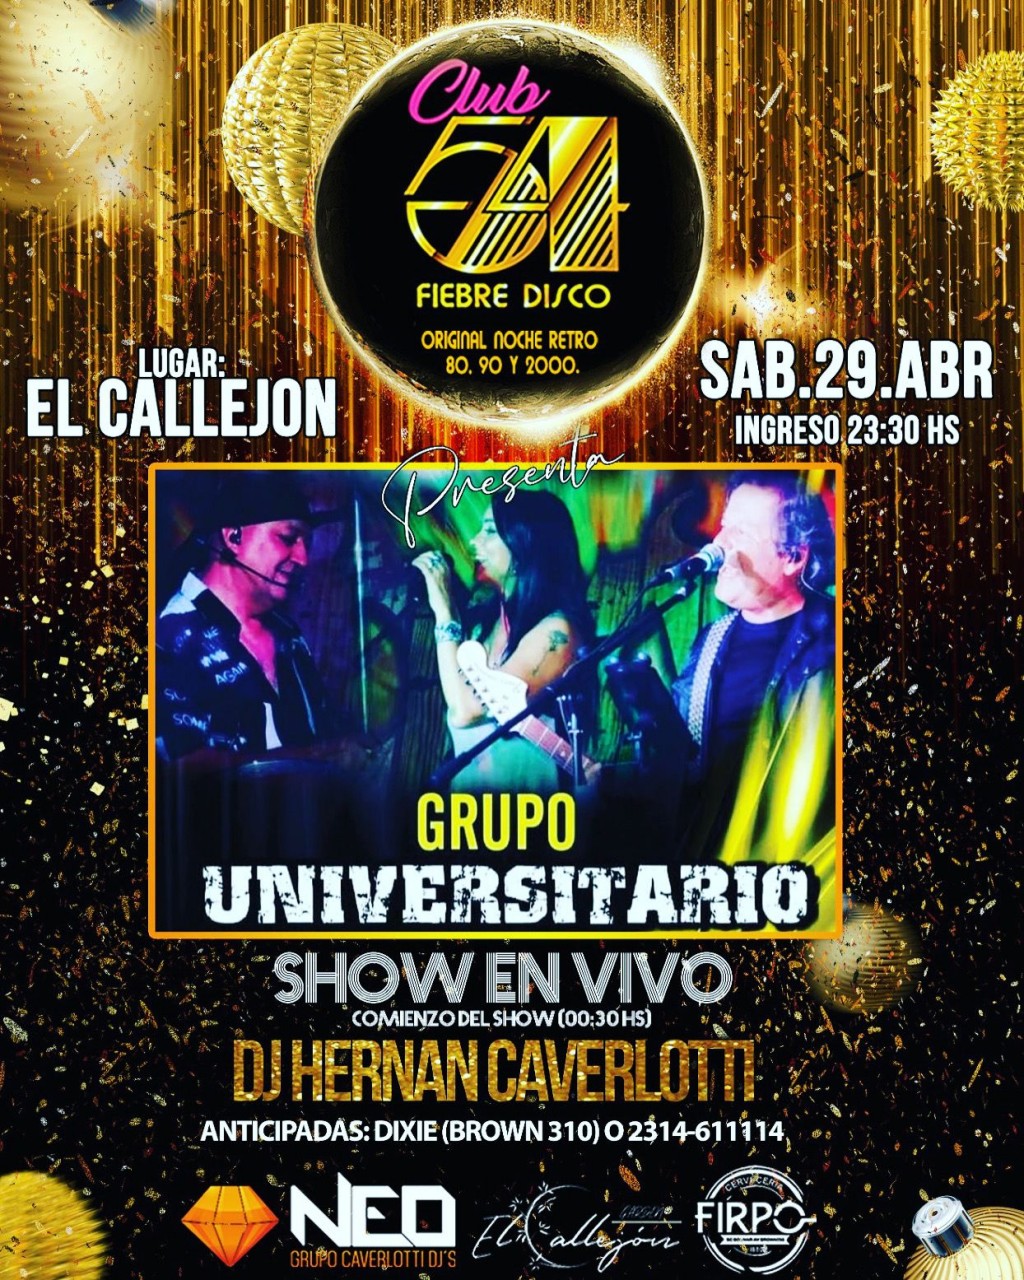 Este Sábado “EL GRUPO UNIVERSITARIO” vuelve a Bolívar y “ La Fiesta Retro Club 54 Fiebre Disco”